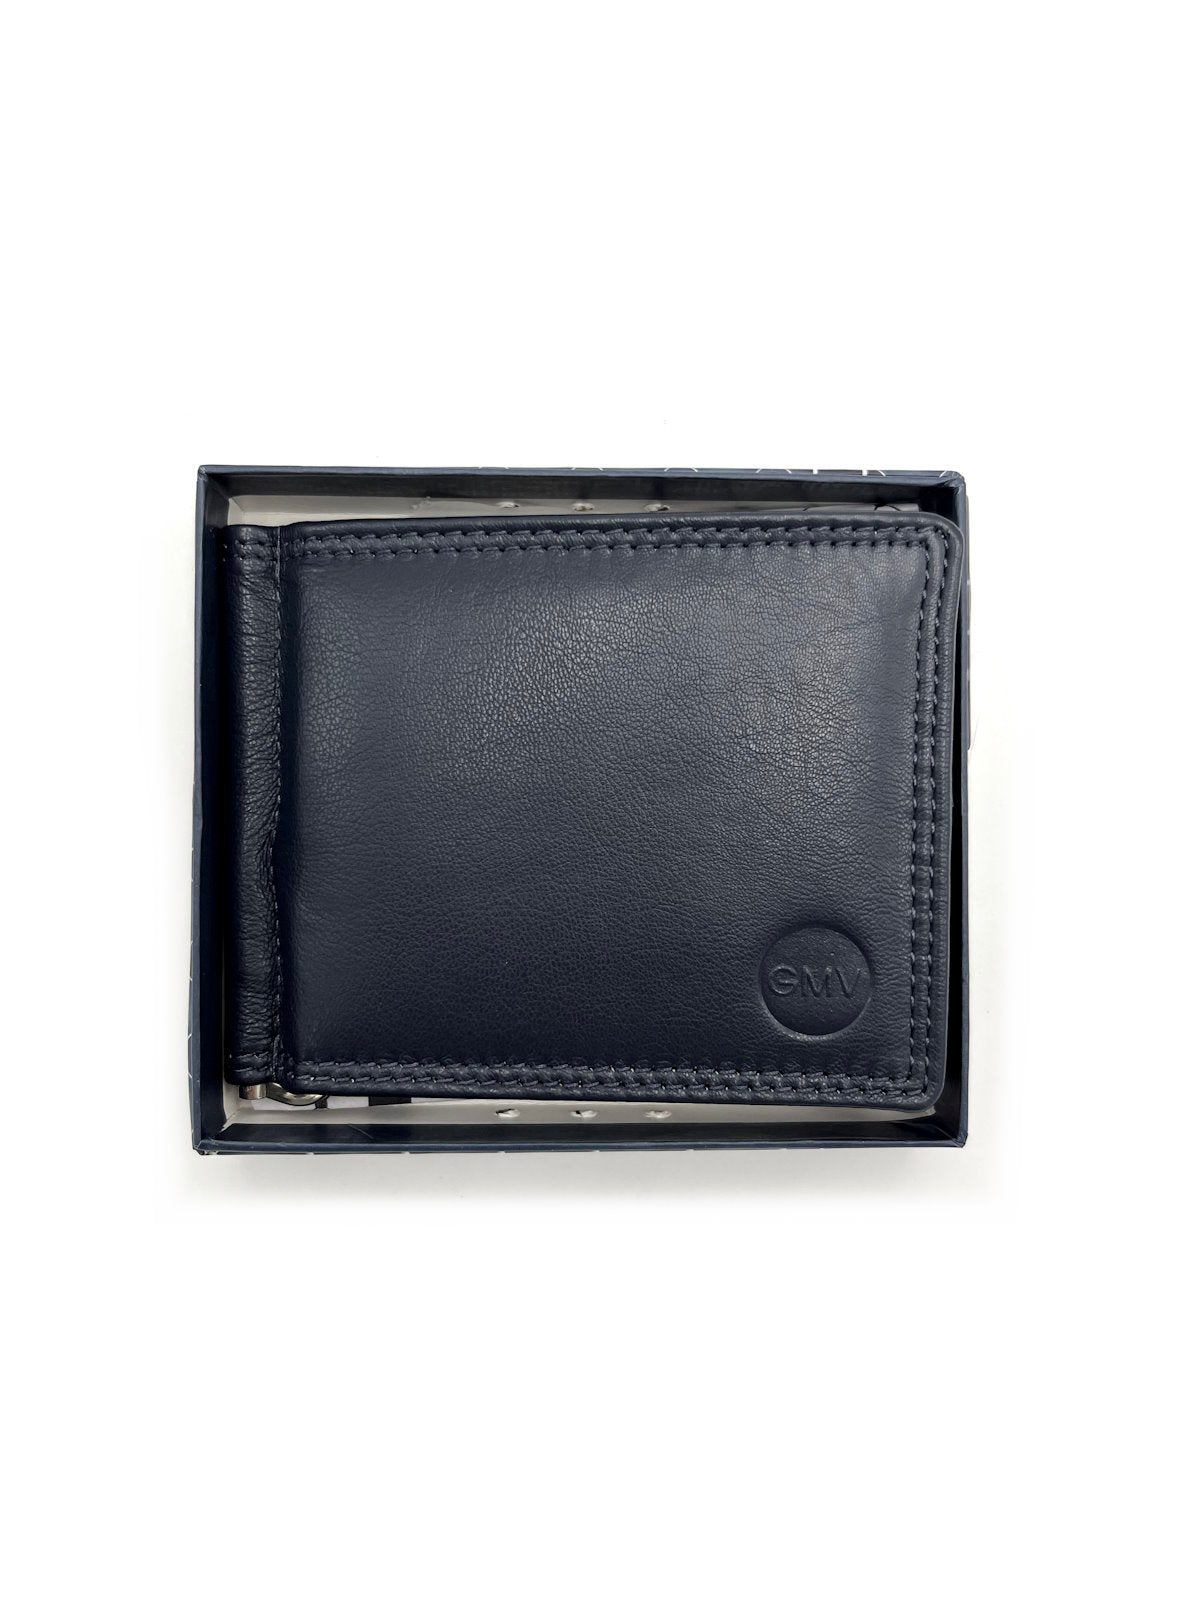 Genuine leather wallet, Brand GMV, art. GMV80-24